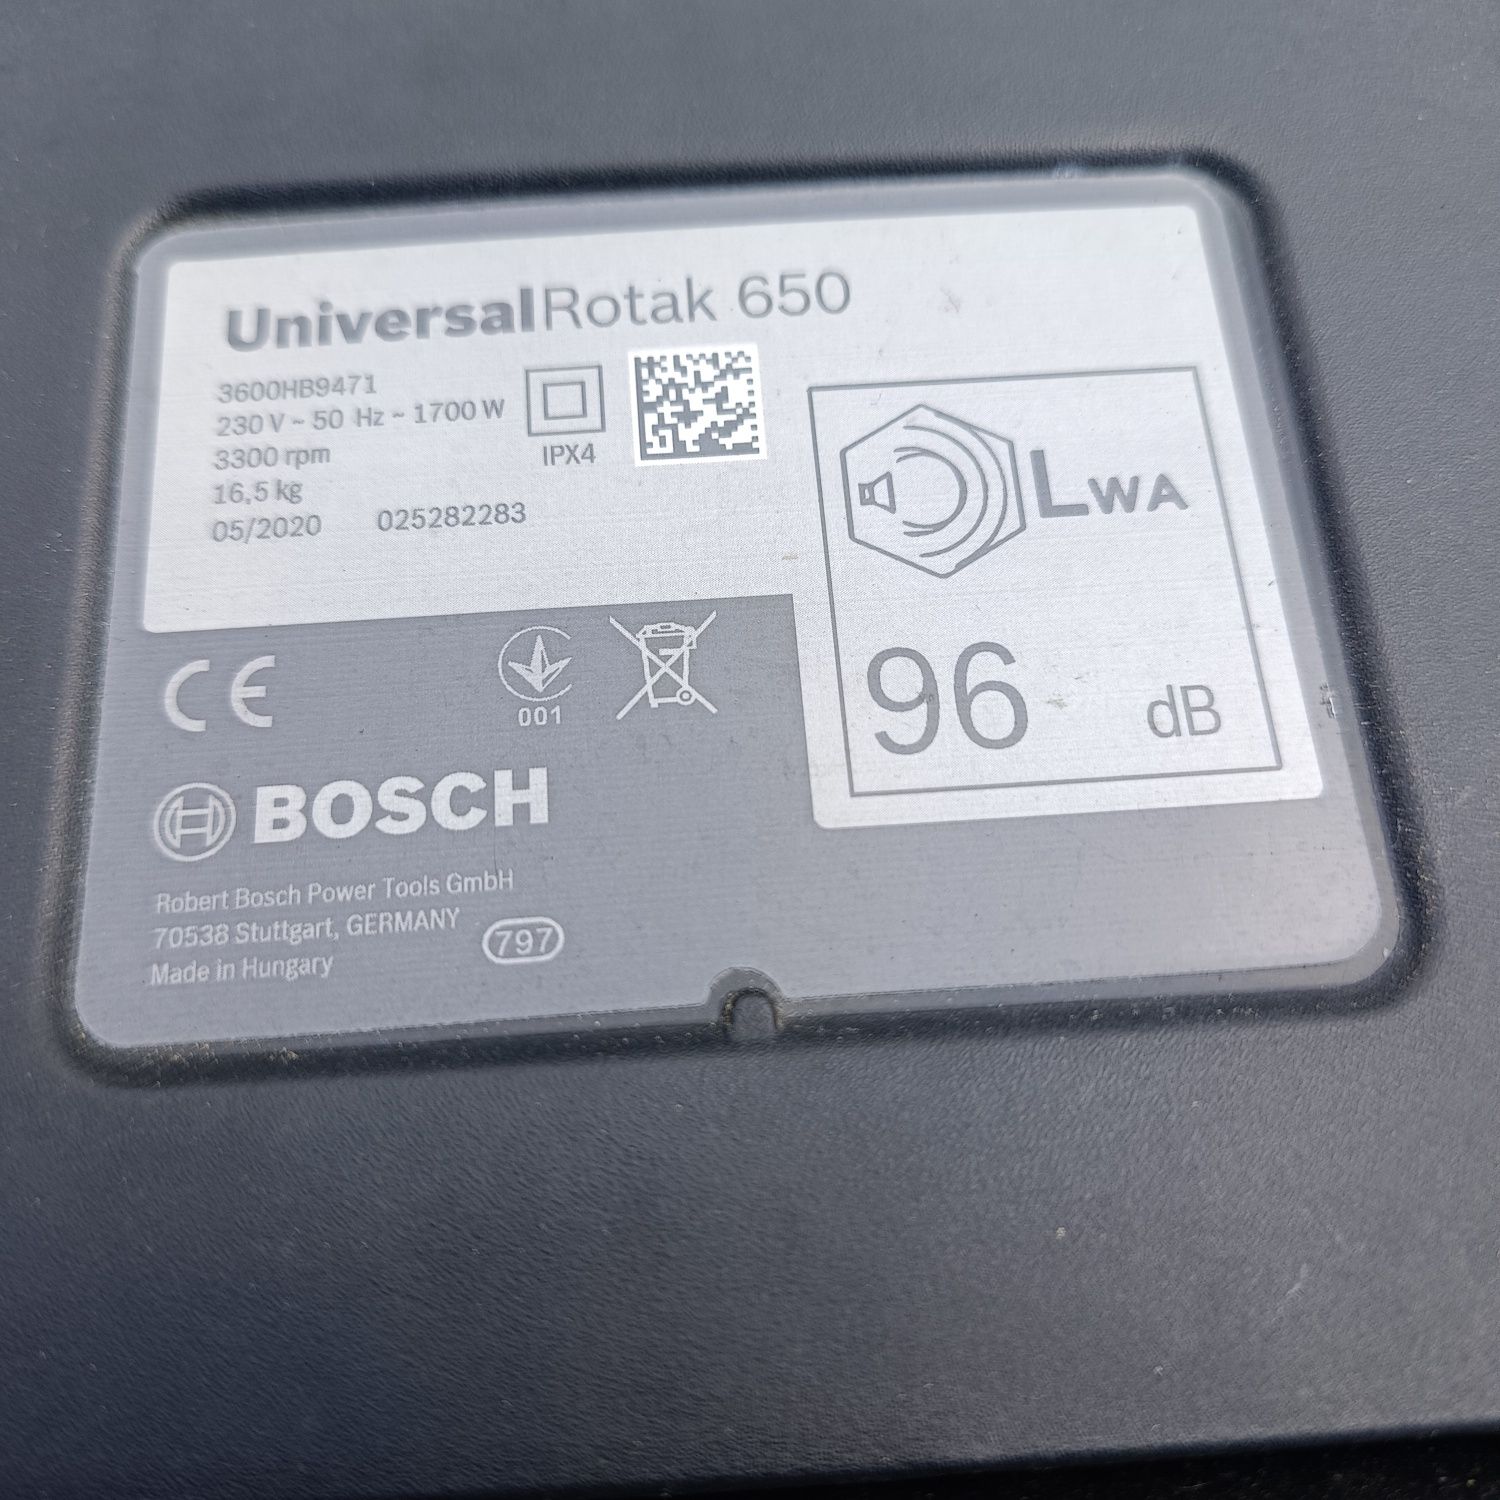 Kosiarka elektryczna Bosch rotak uniwersal 650